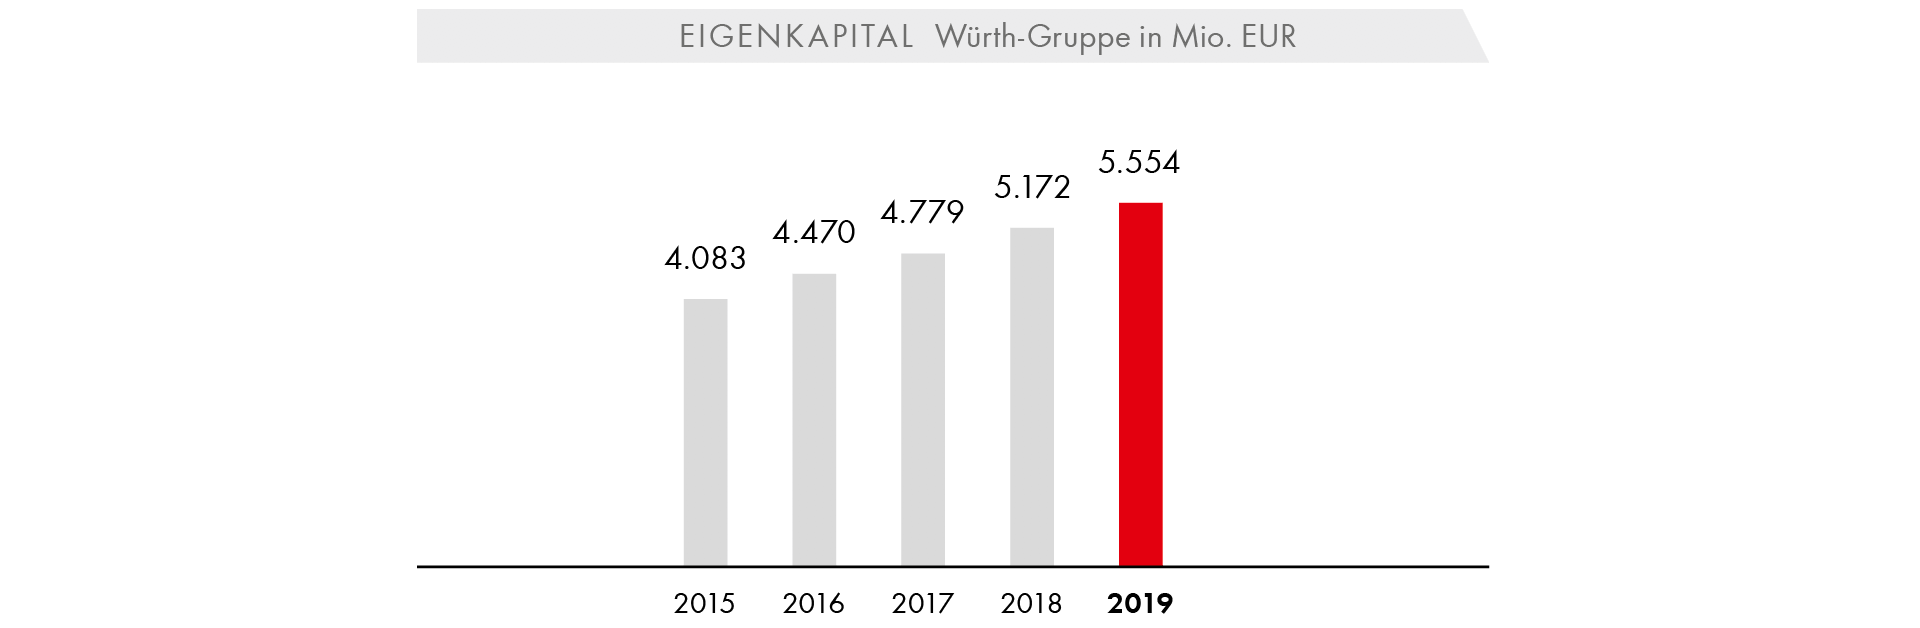 Eigenkapital Würth-Gruppe in Mio. EUR